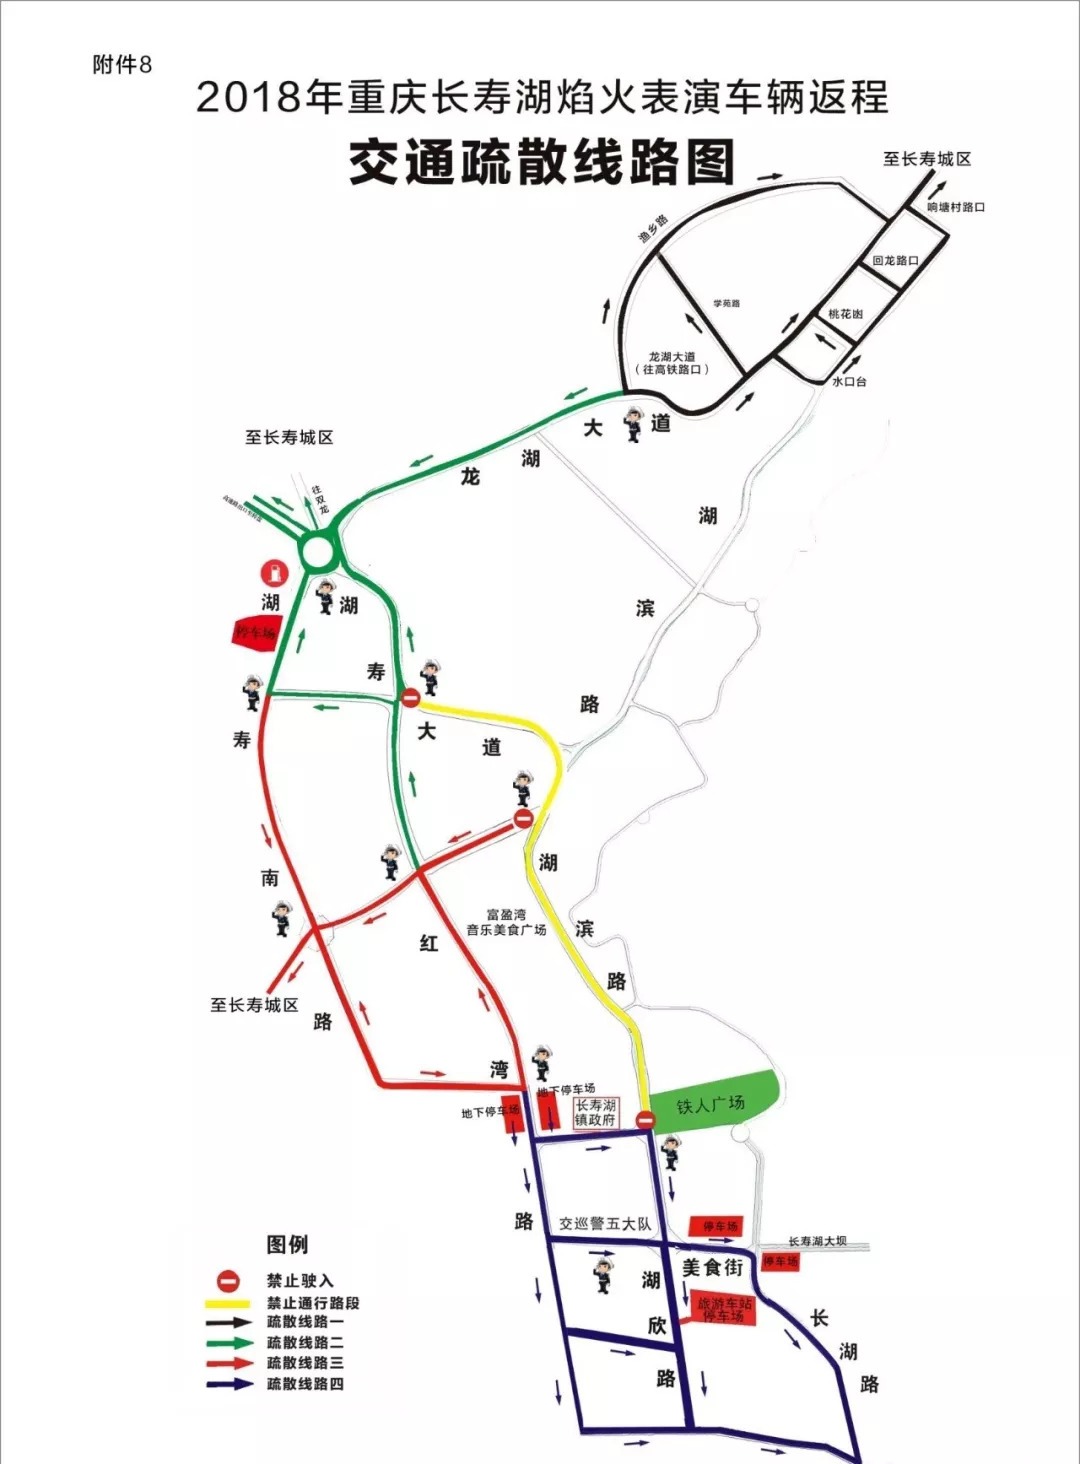 明天的长寿湖 一定会惊艳到你 赶紧约上伙伴们 附:活动期间交通路线图